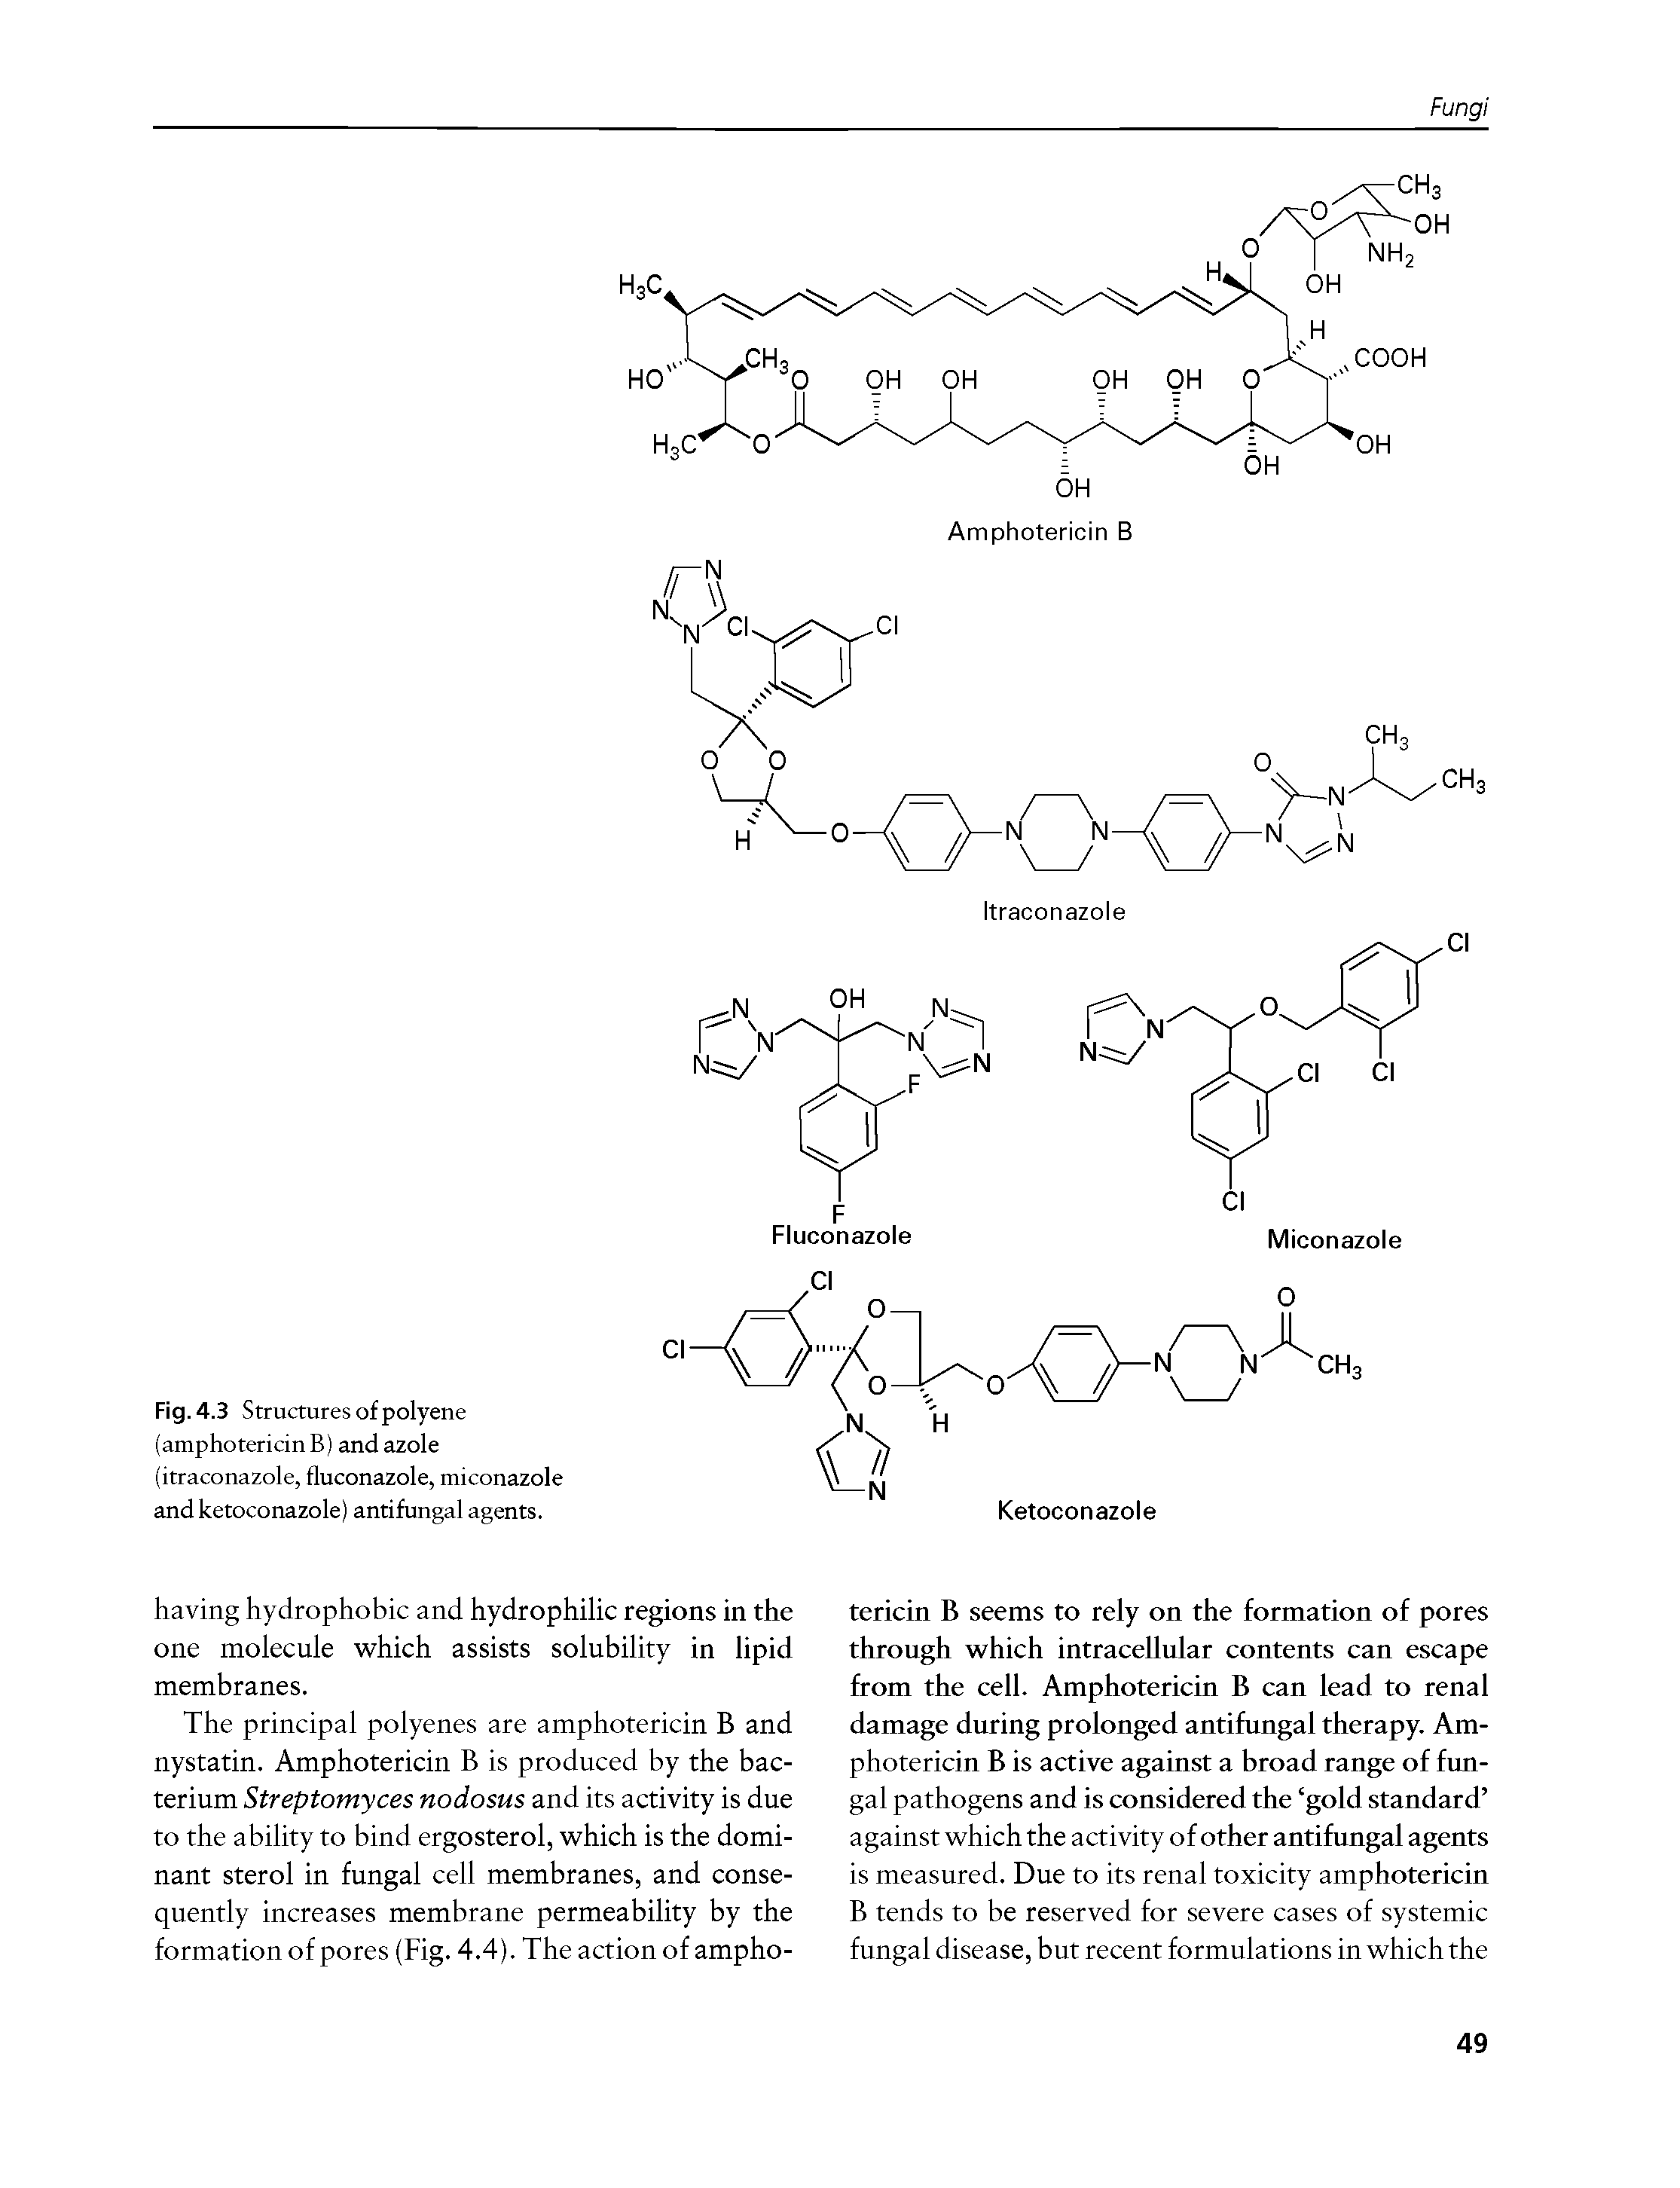 Fig. 4.3 Structures of polyene (amphotericin B) and azole (itraconazole, fluconazole, miconazole and ketoconazole) antifungal agents.